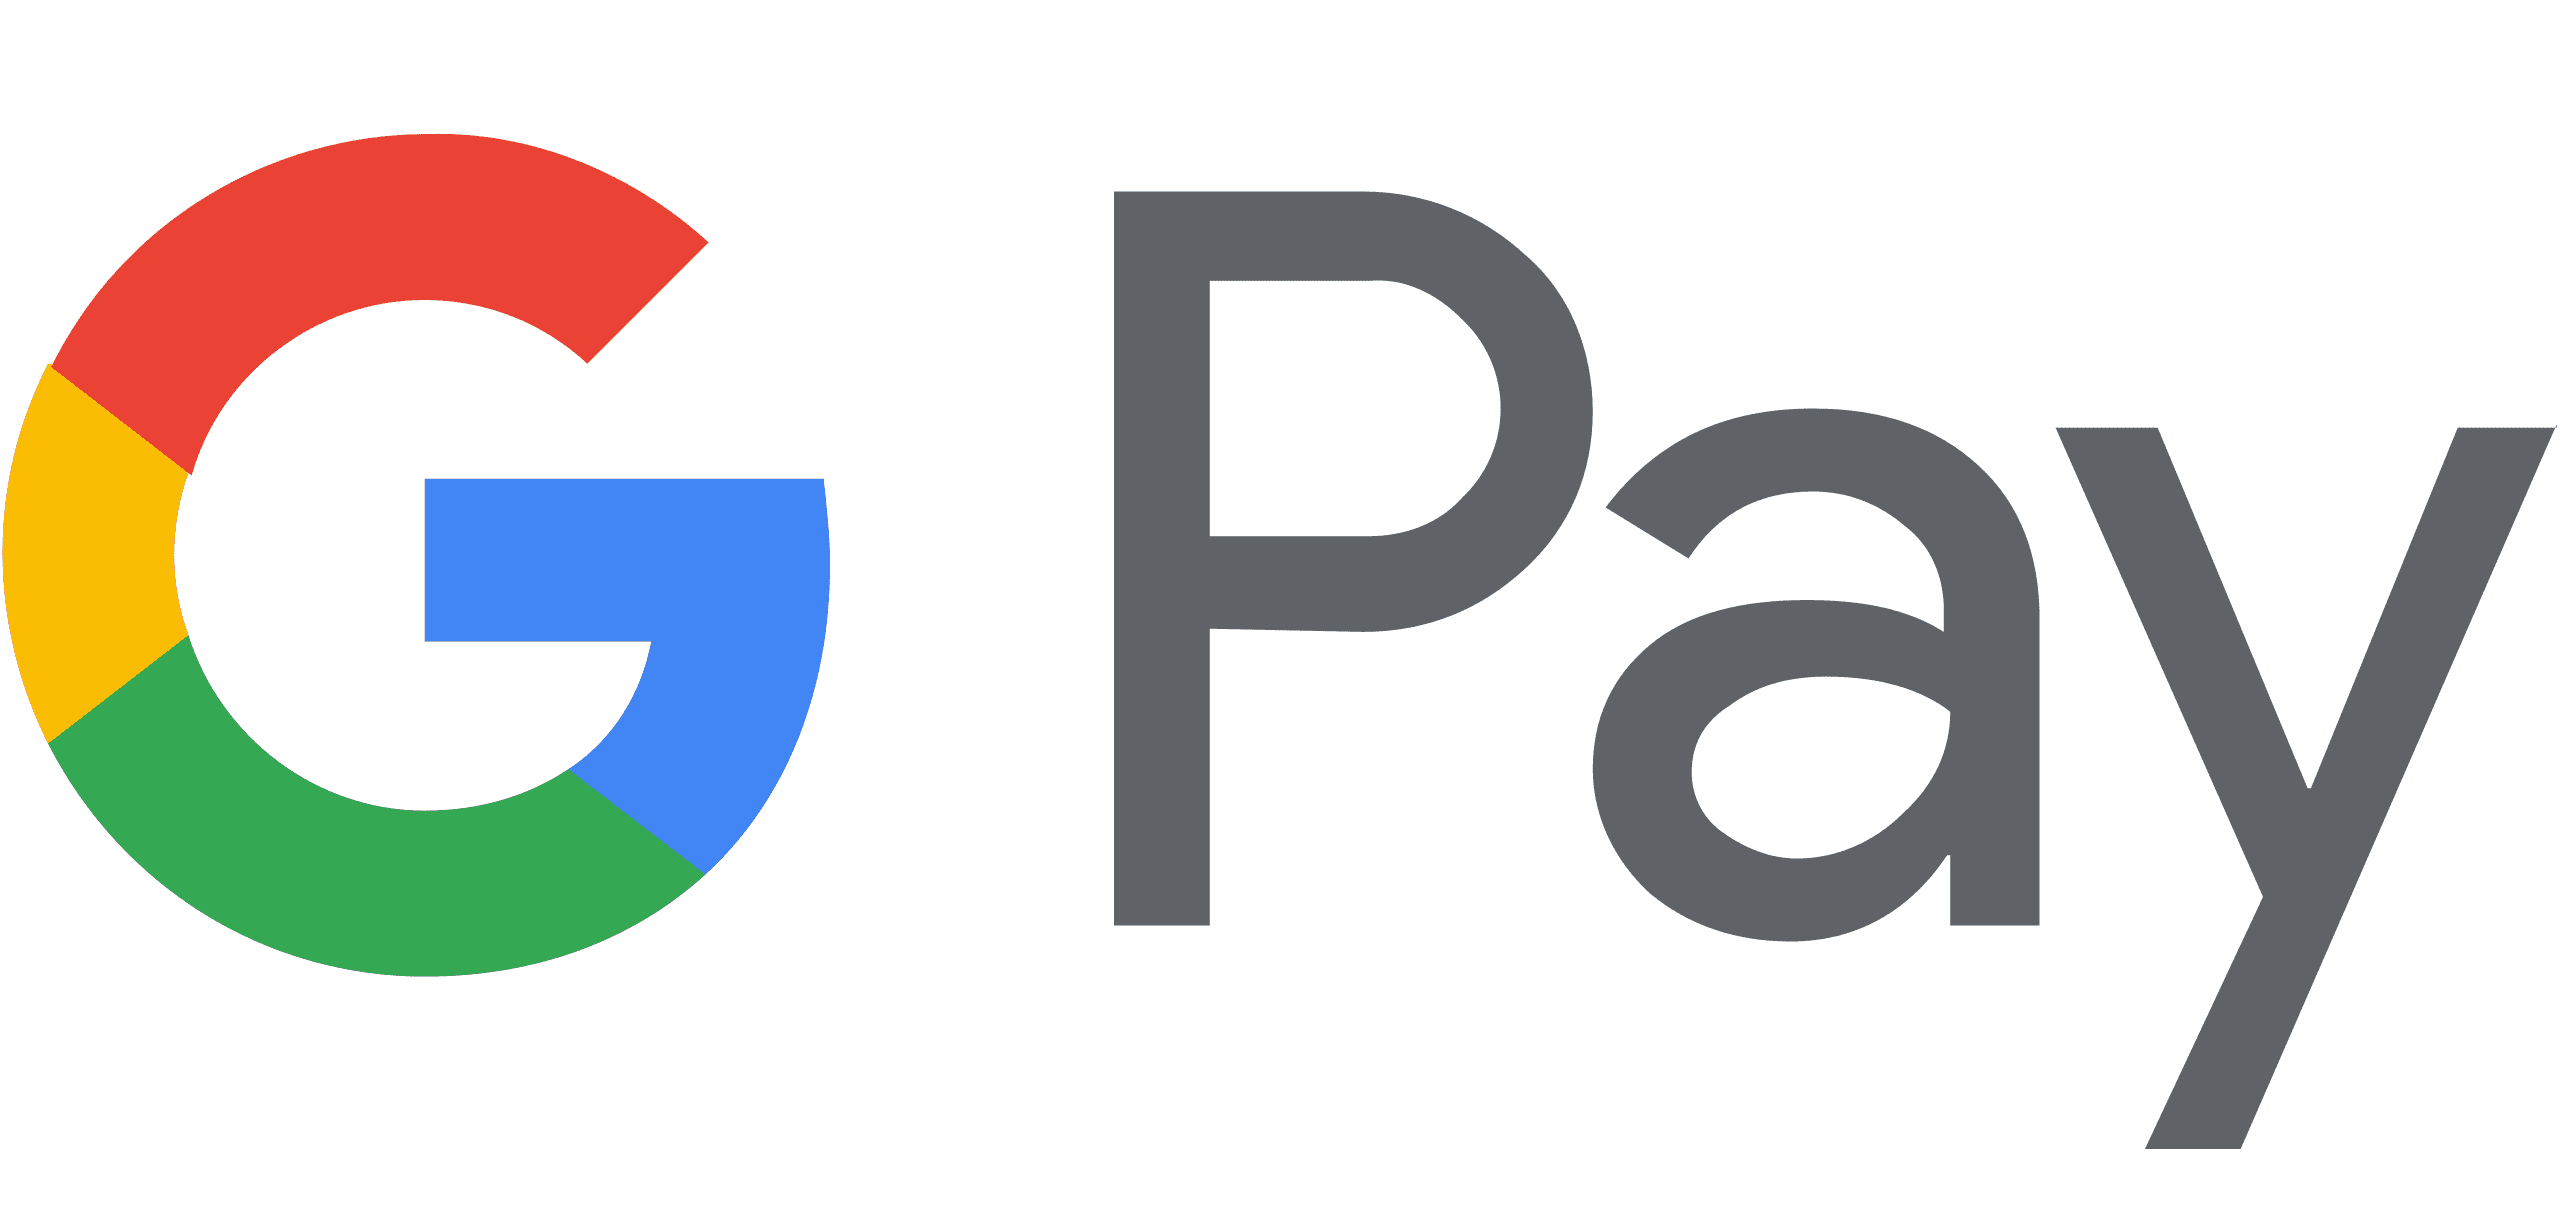 Google_Pay_Logo.svg